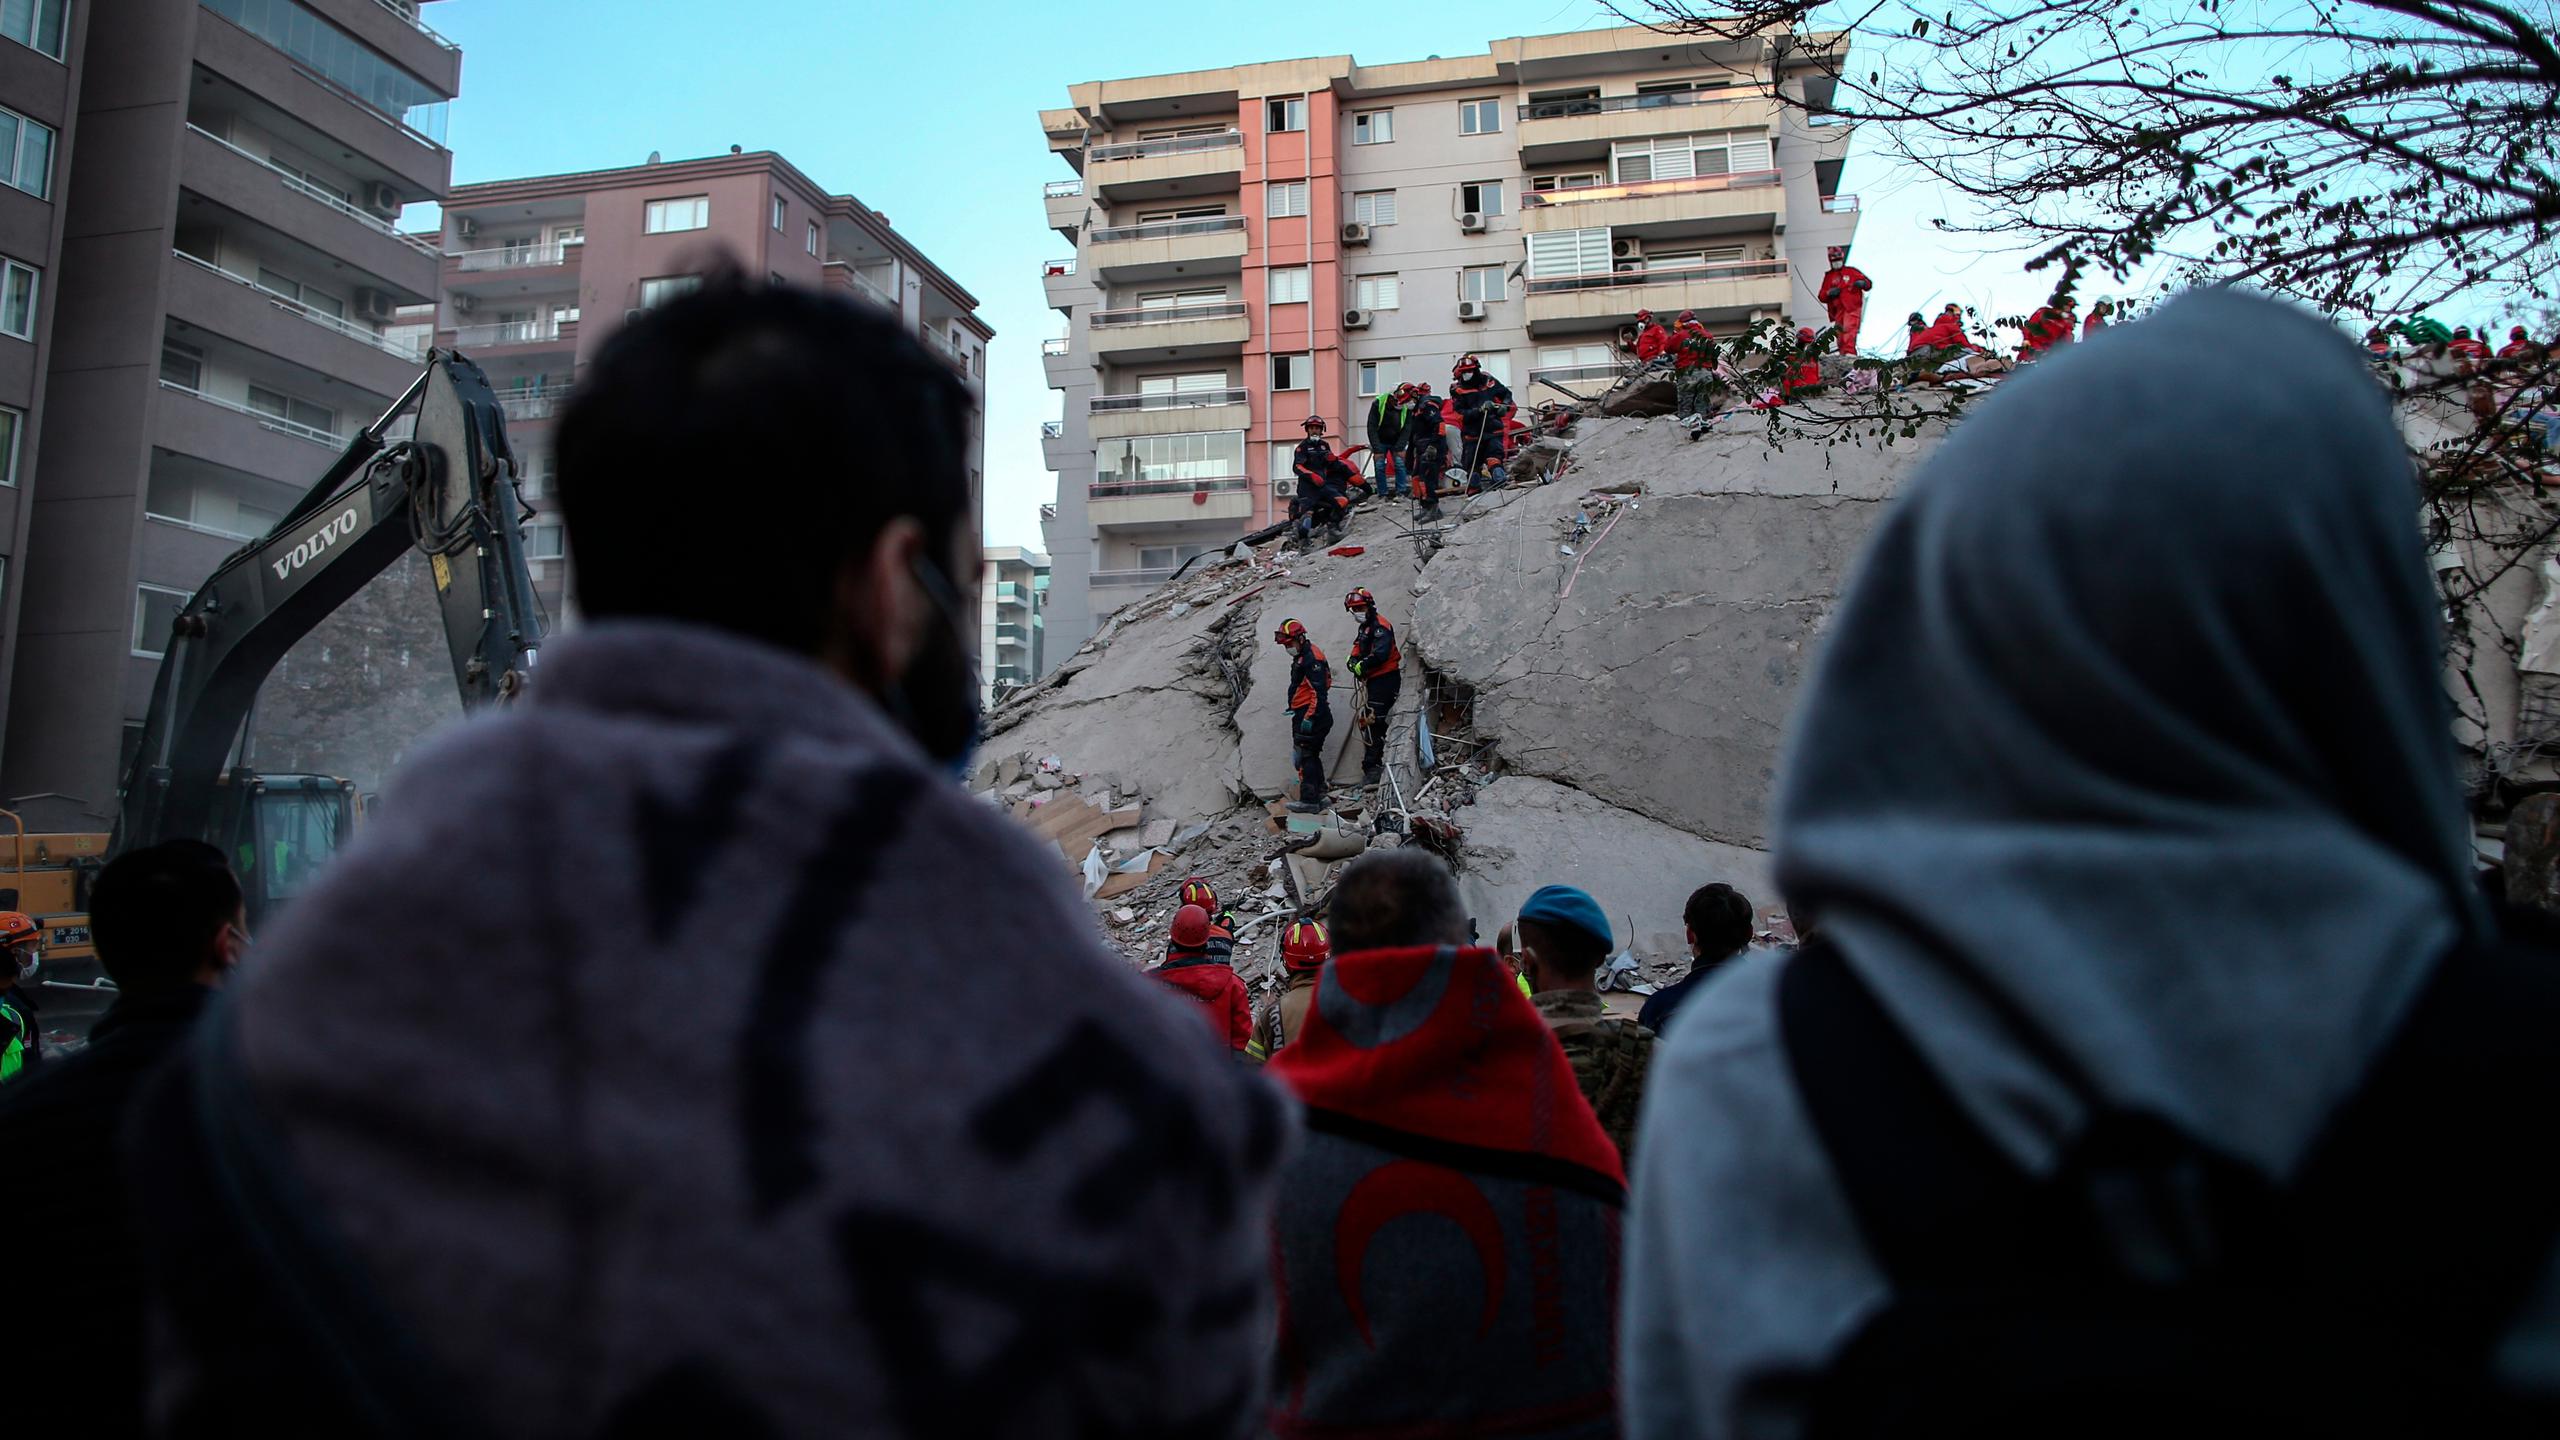 Los equipos de AFAD, el servicio de emergencias turco, habían conseguido salvar a 104 personas hasta la medianoche del sábado, pero desde entonces solo había podido recuperar cadáveres de los 6 edificios derrumbados en los que sigue la búsqueda de desaparecidos.